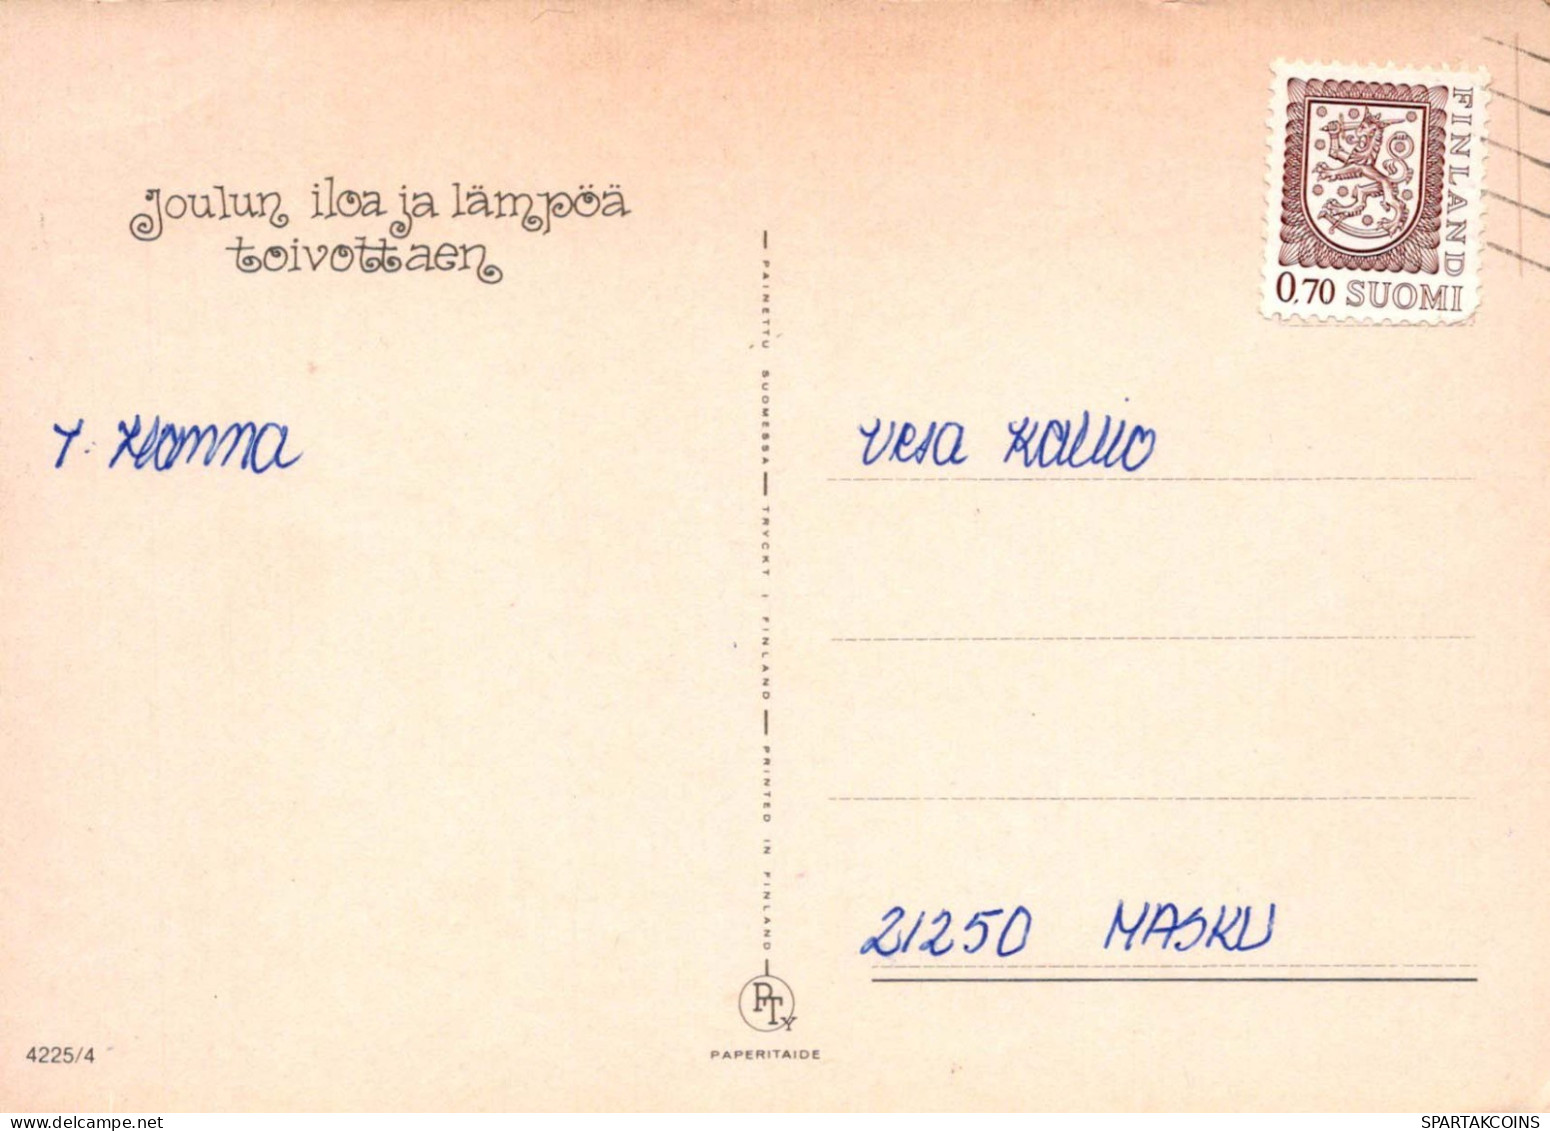 NIÑOS NIÑOS Escena S Paisajes Vintage Tarjeta Postal CPSM #PBU406.ES - Scenes & Landscapes